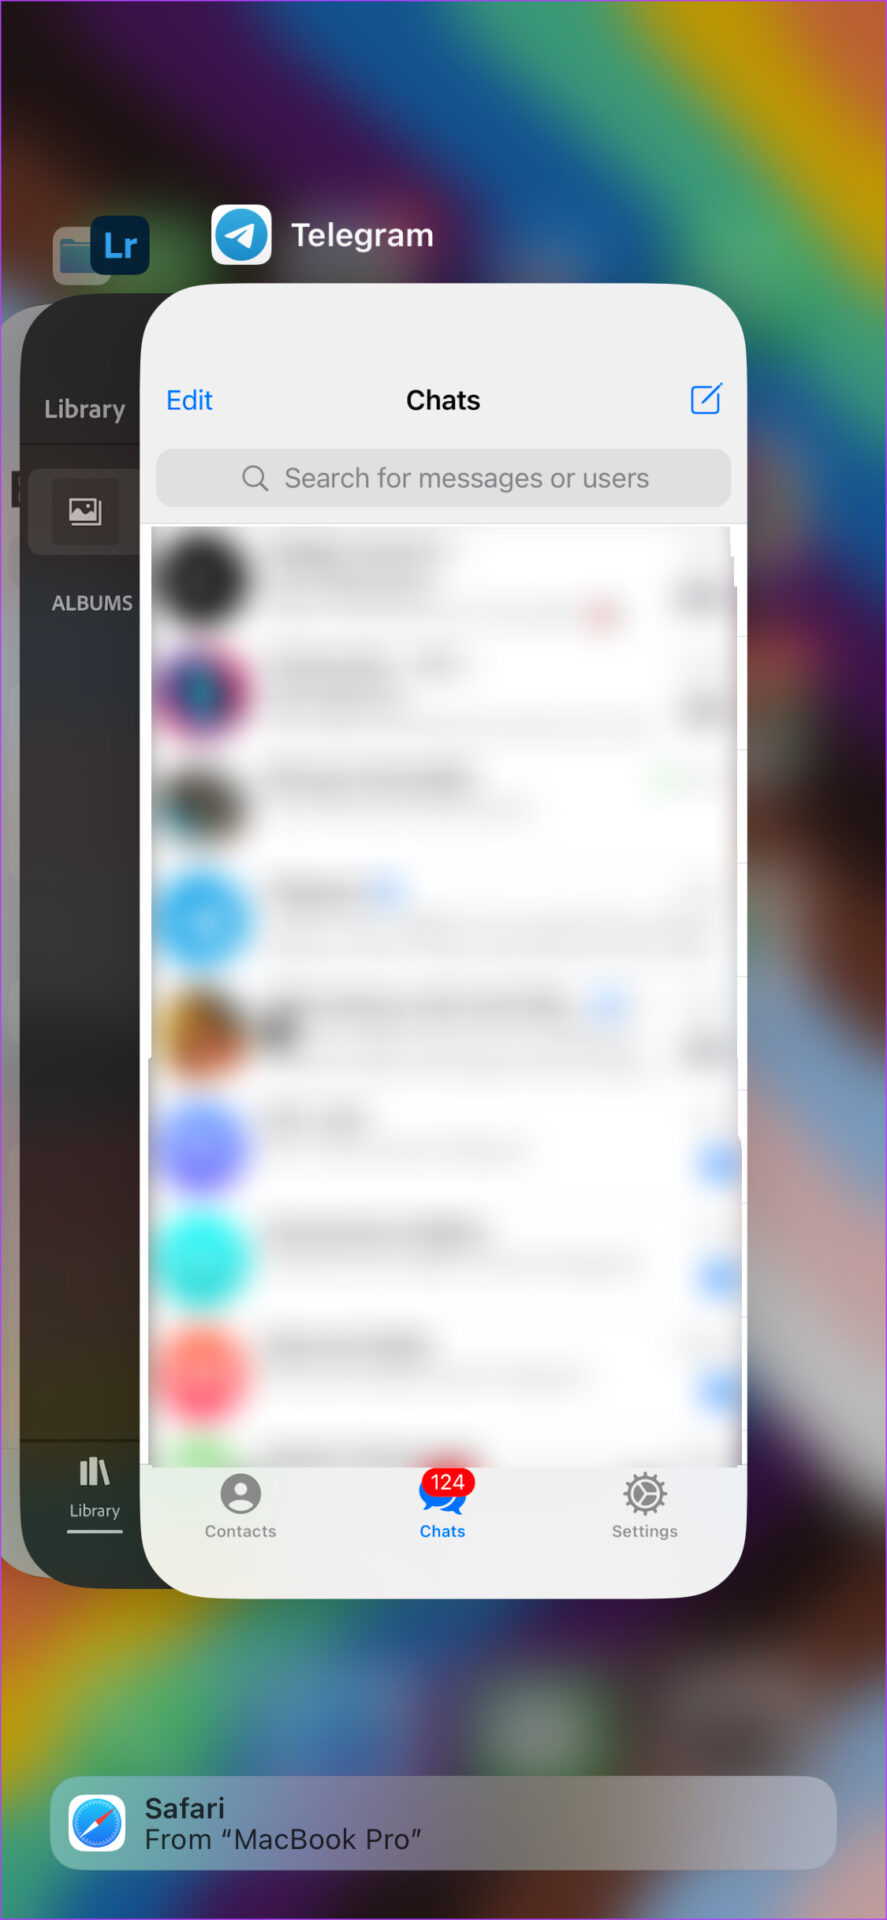 Telegram in recent apps